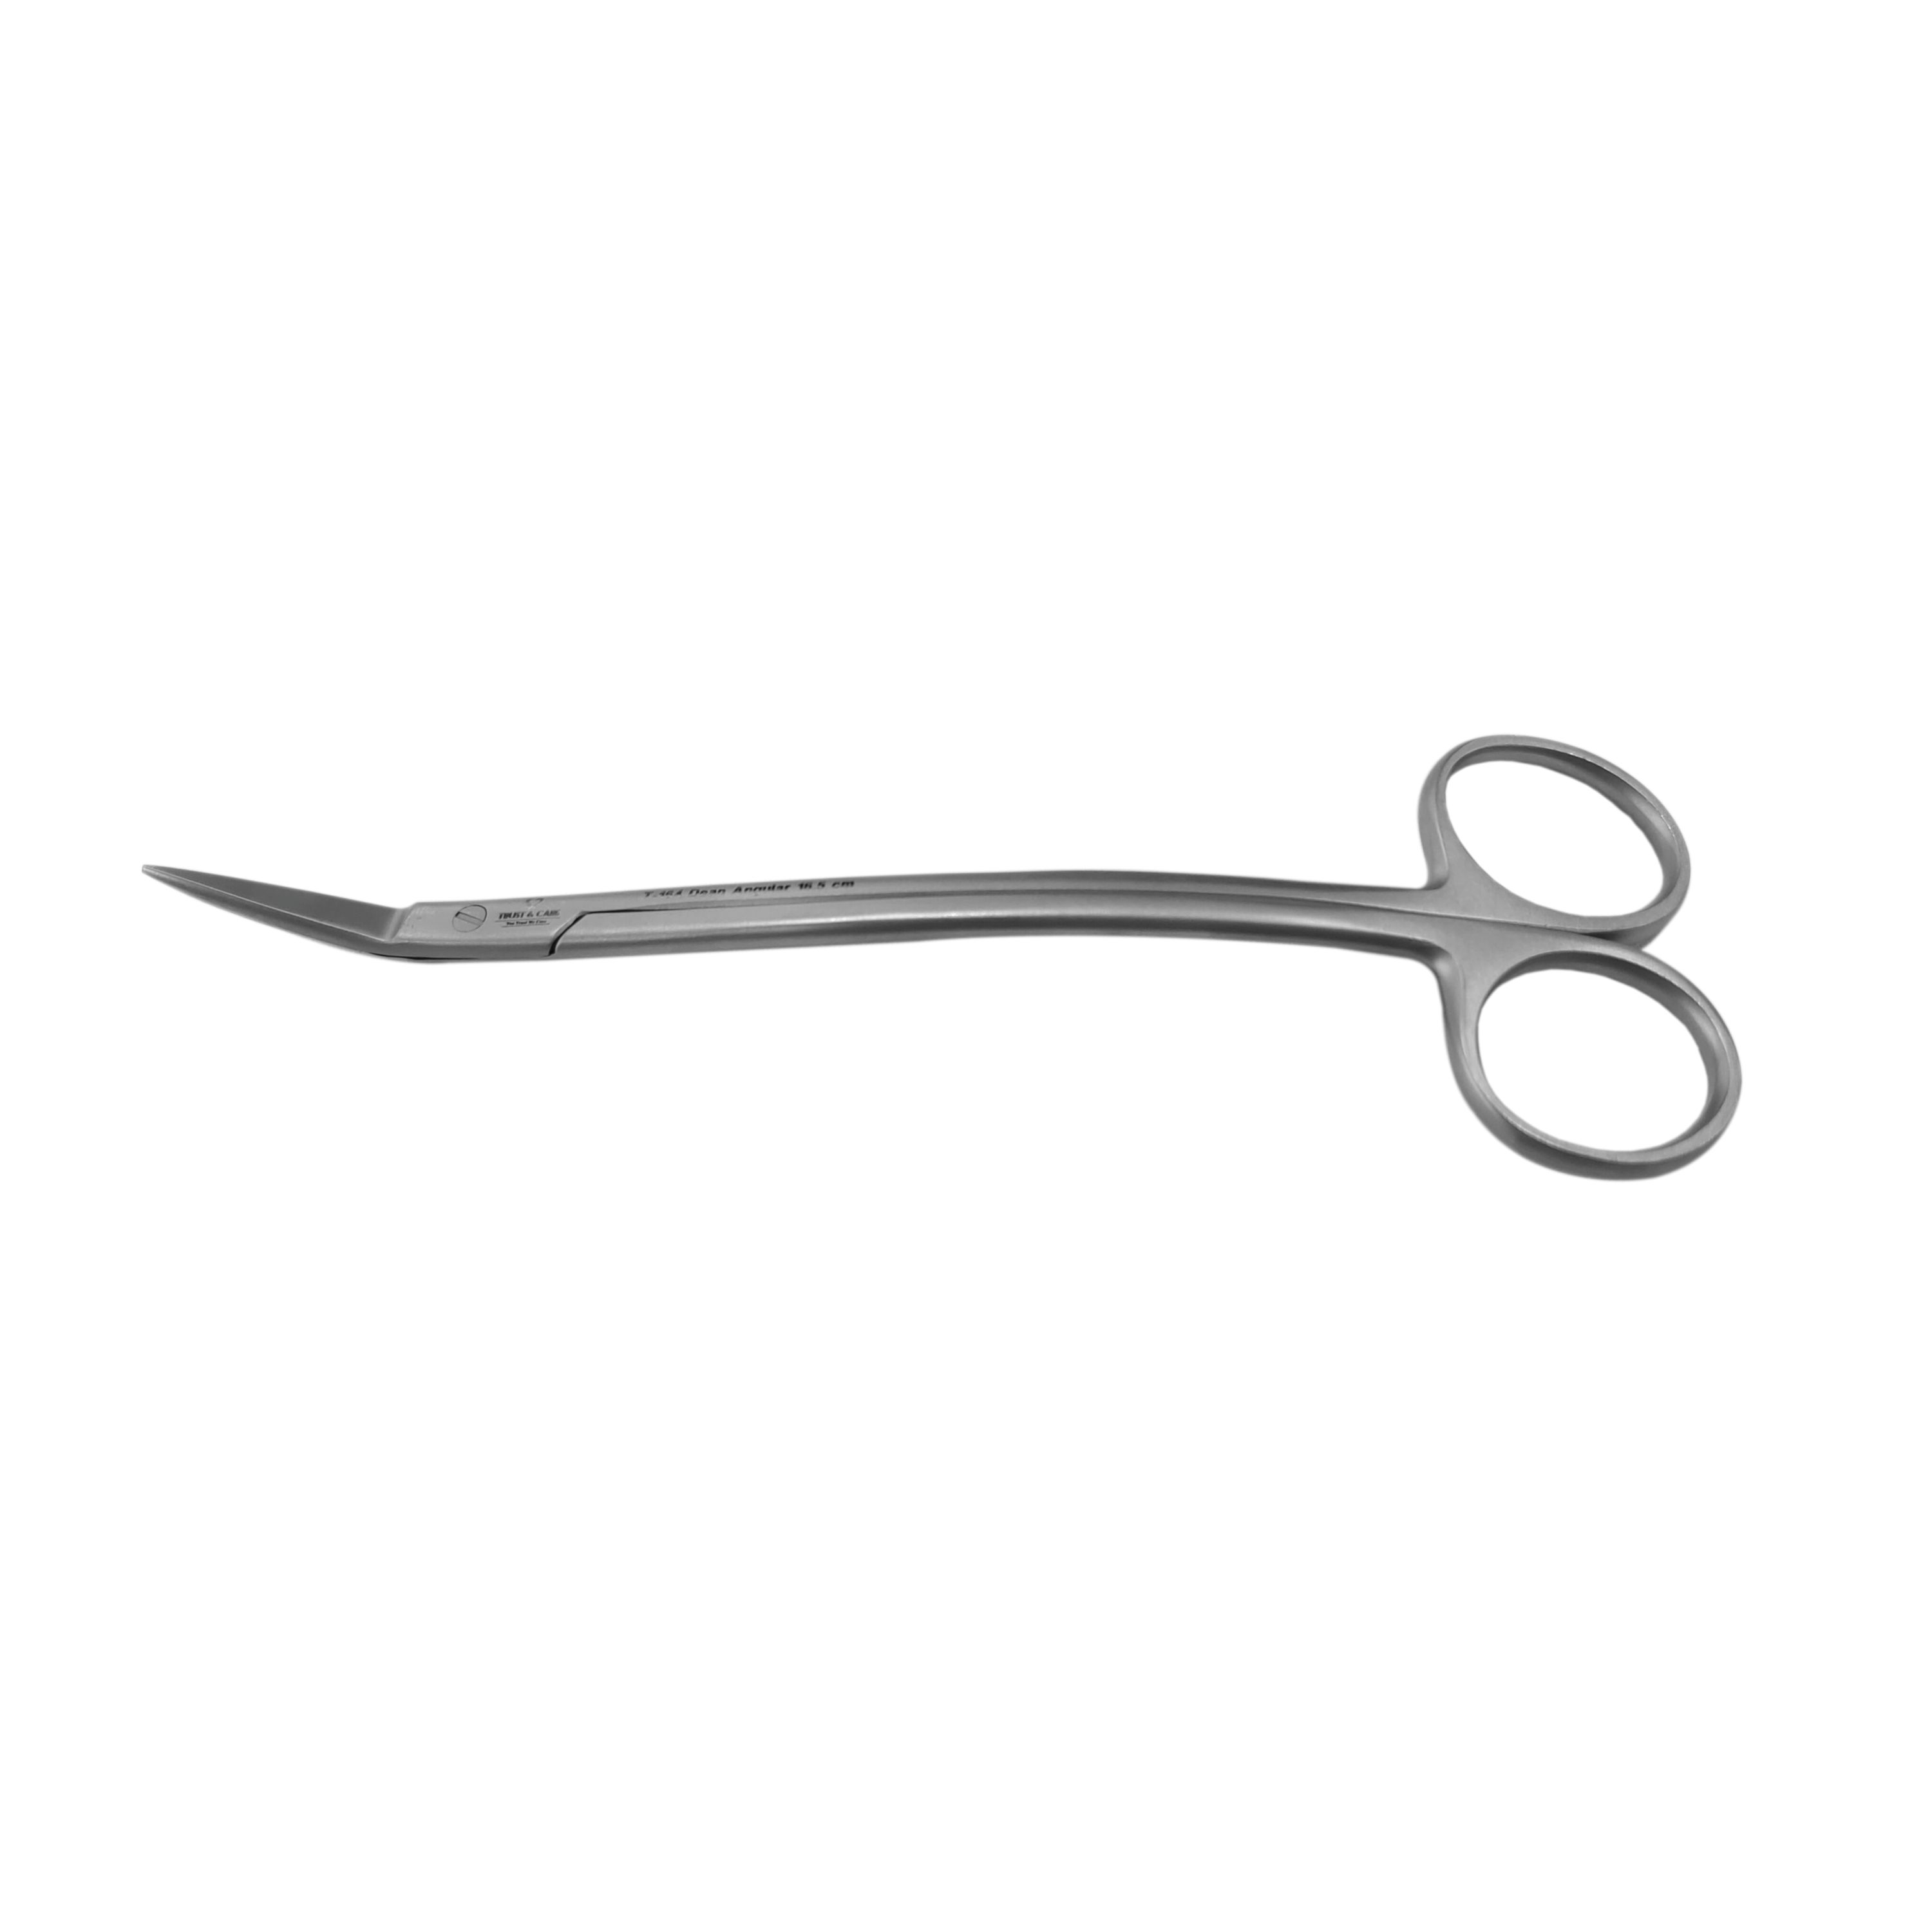 Trust & Care Dean Angular Scissor 16.5Cm